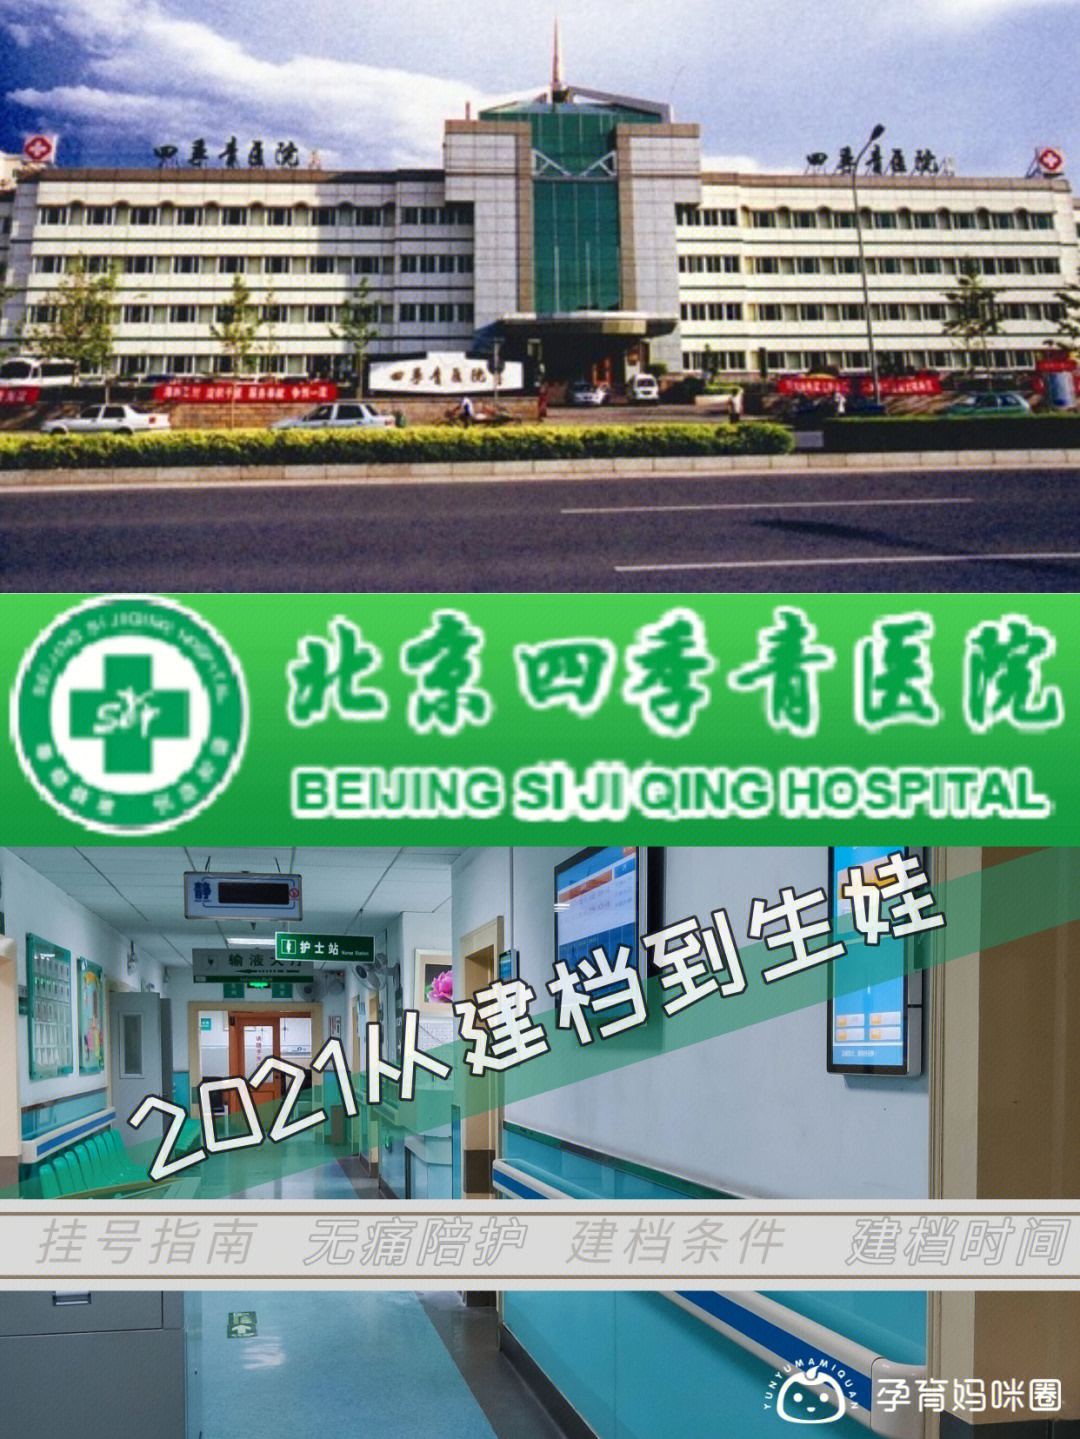 94四季青医院是位于海淀区的一所二级医院,北京市医保定点医院